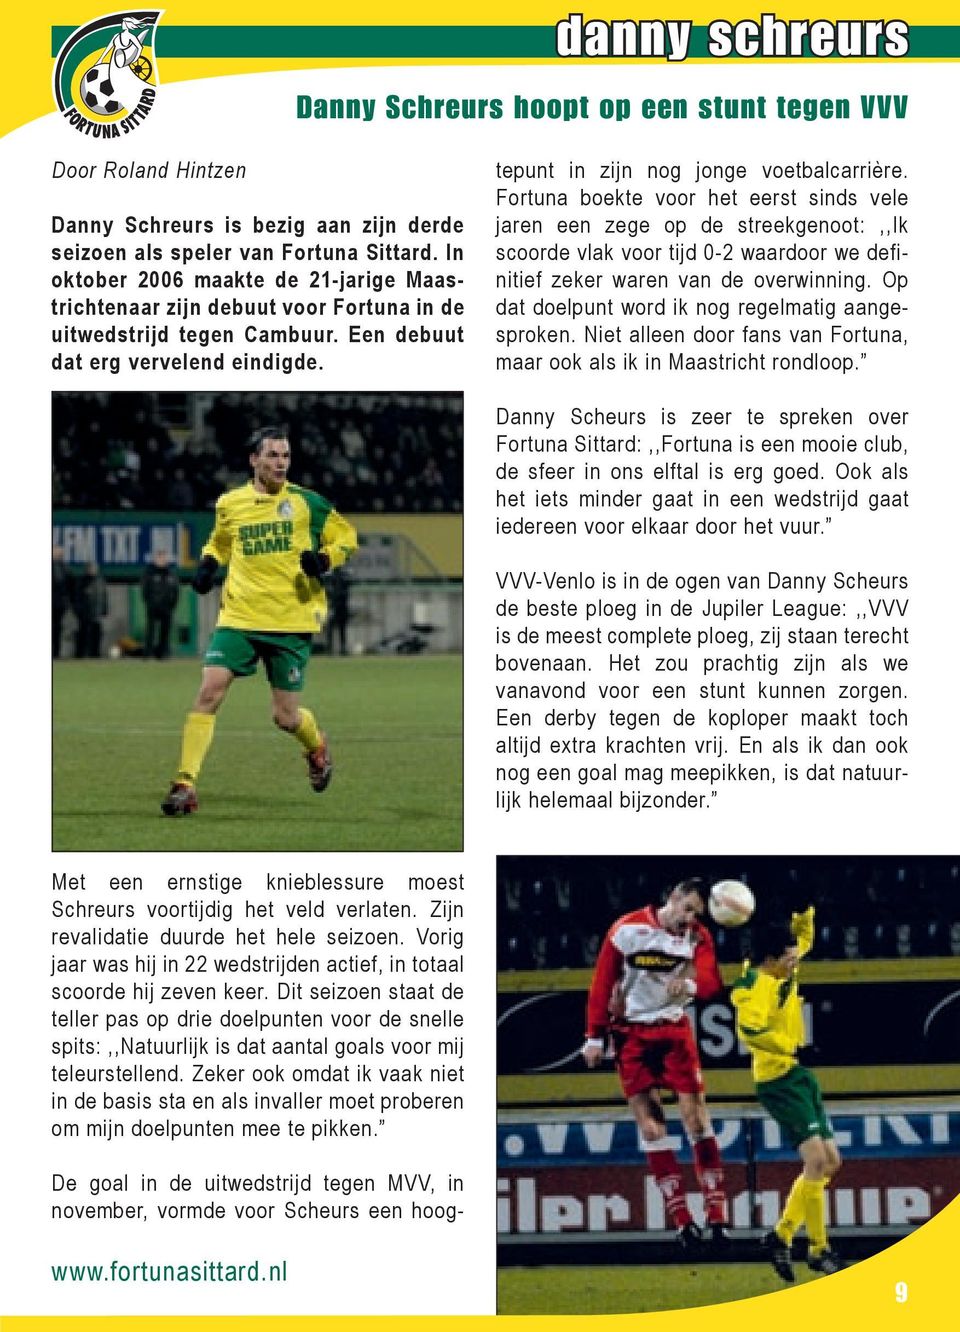 De goal in de uitwedstrijd tegen MVV, in november, vormde voor Scheurs een hoogtepunt in zijn nog jonge voetbalcarrière.